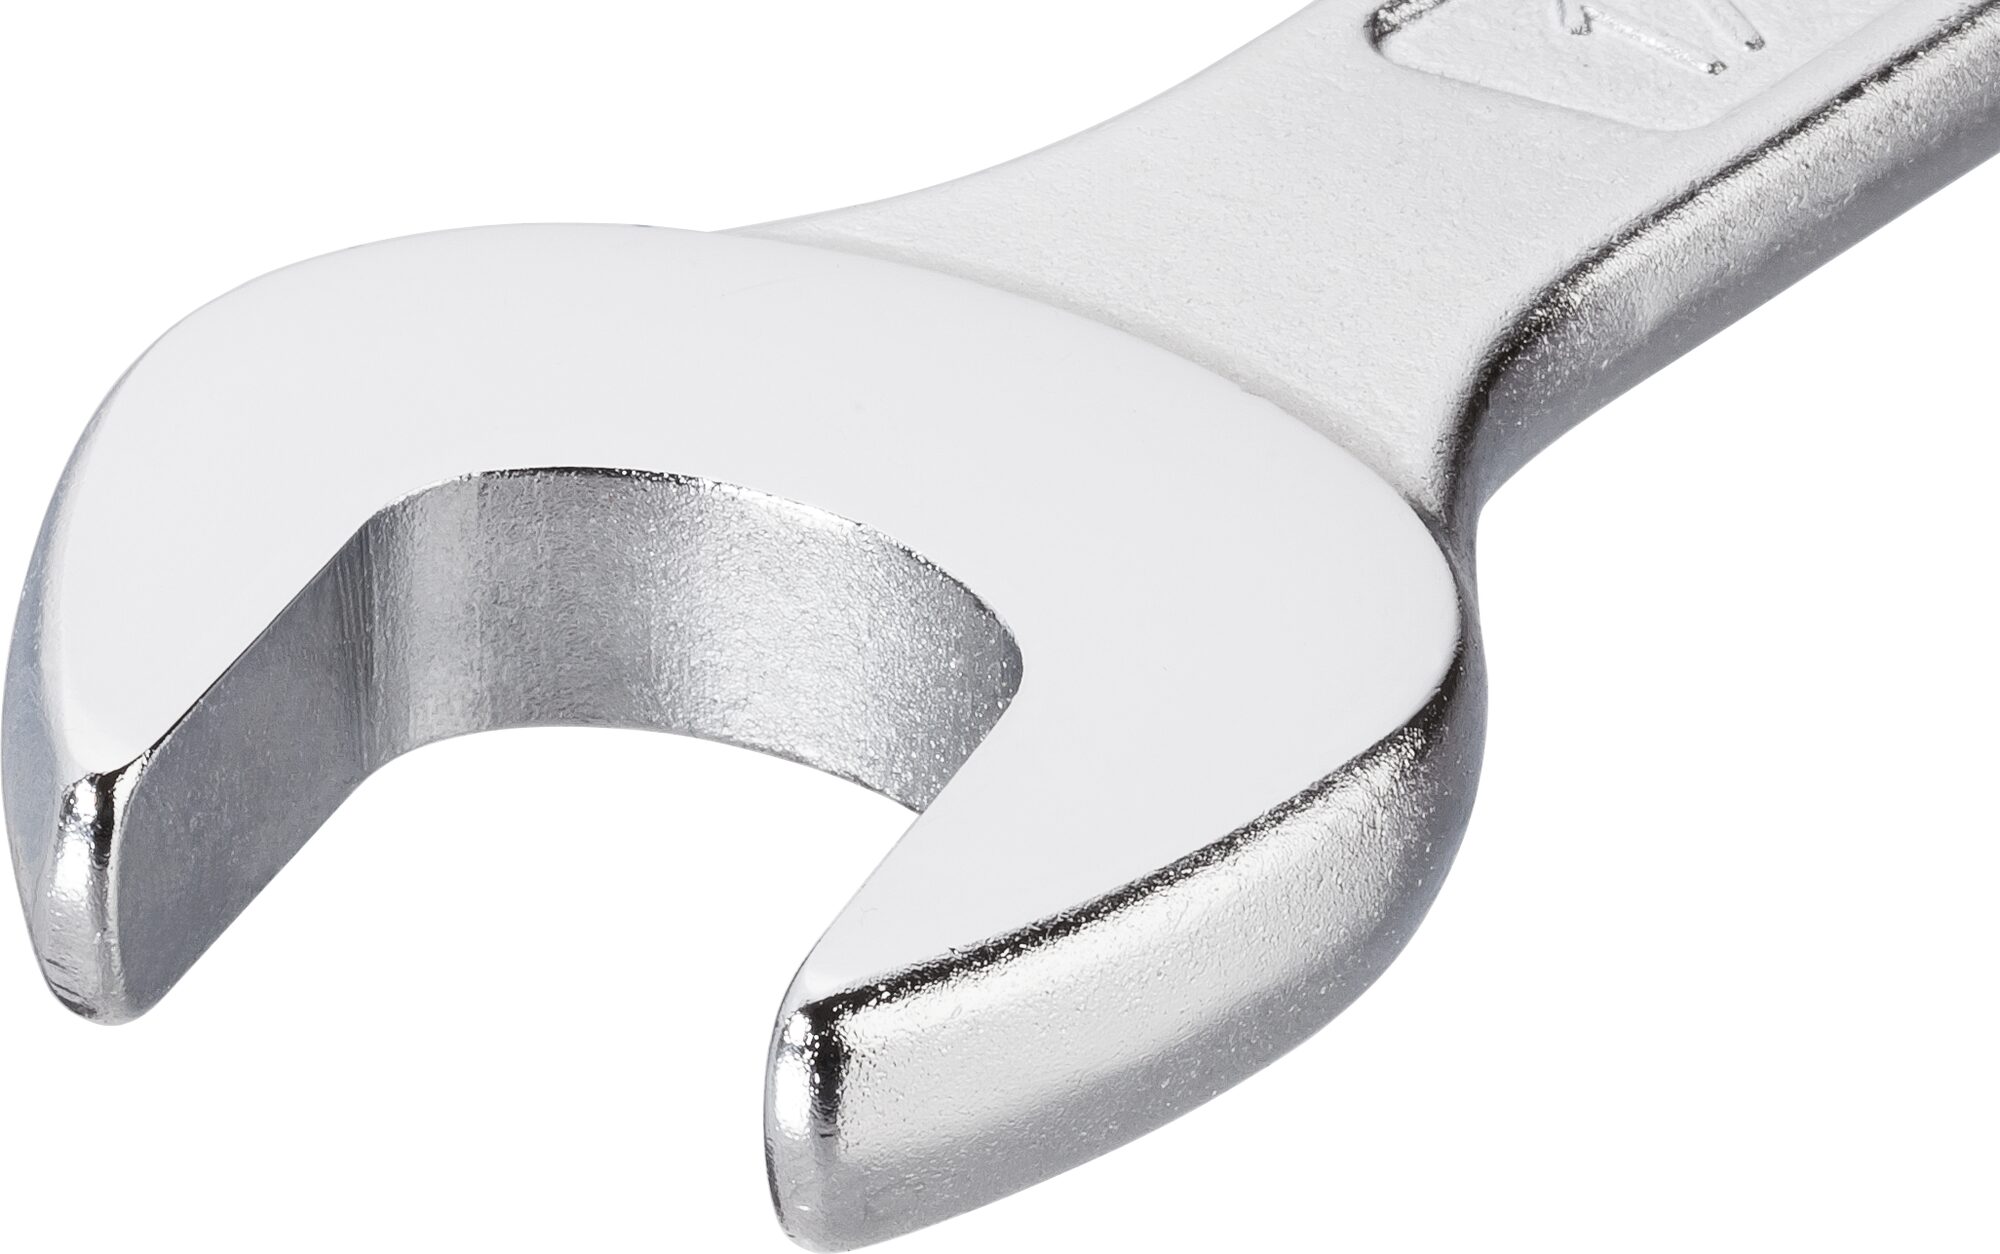 HAZET Ring-Maulschlüssel 600N-29 · Außen Doppel-Sechskant-Tractionsprofil · 29 mm